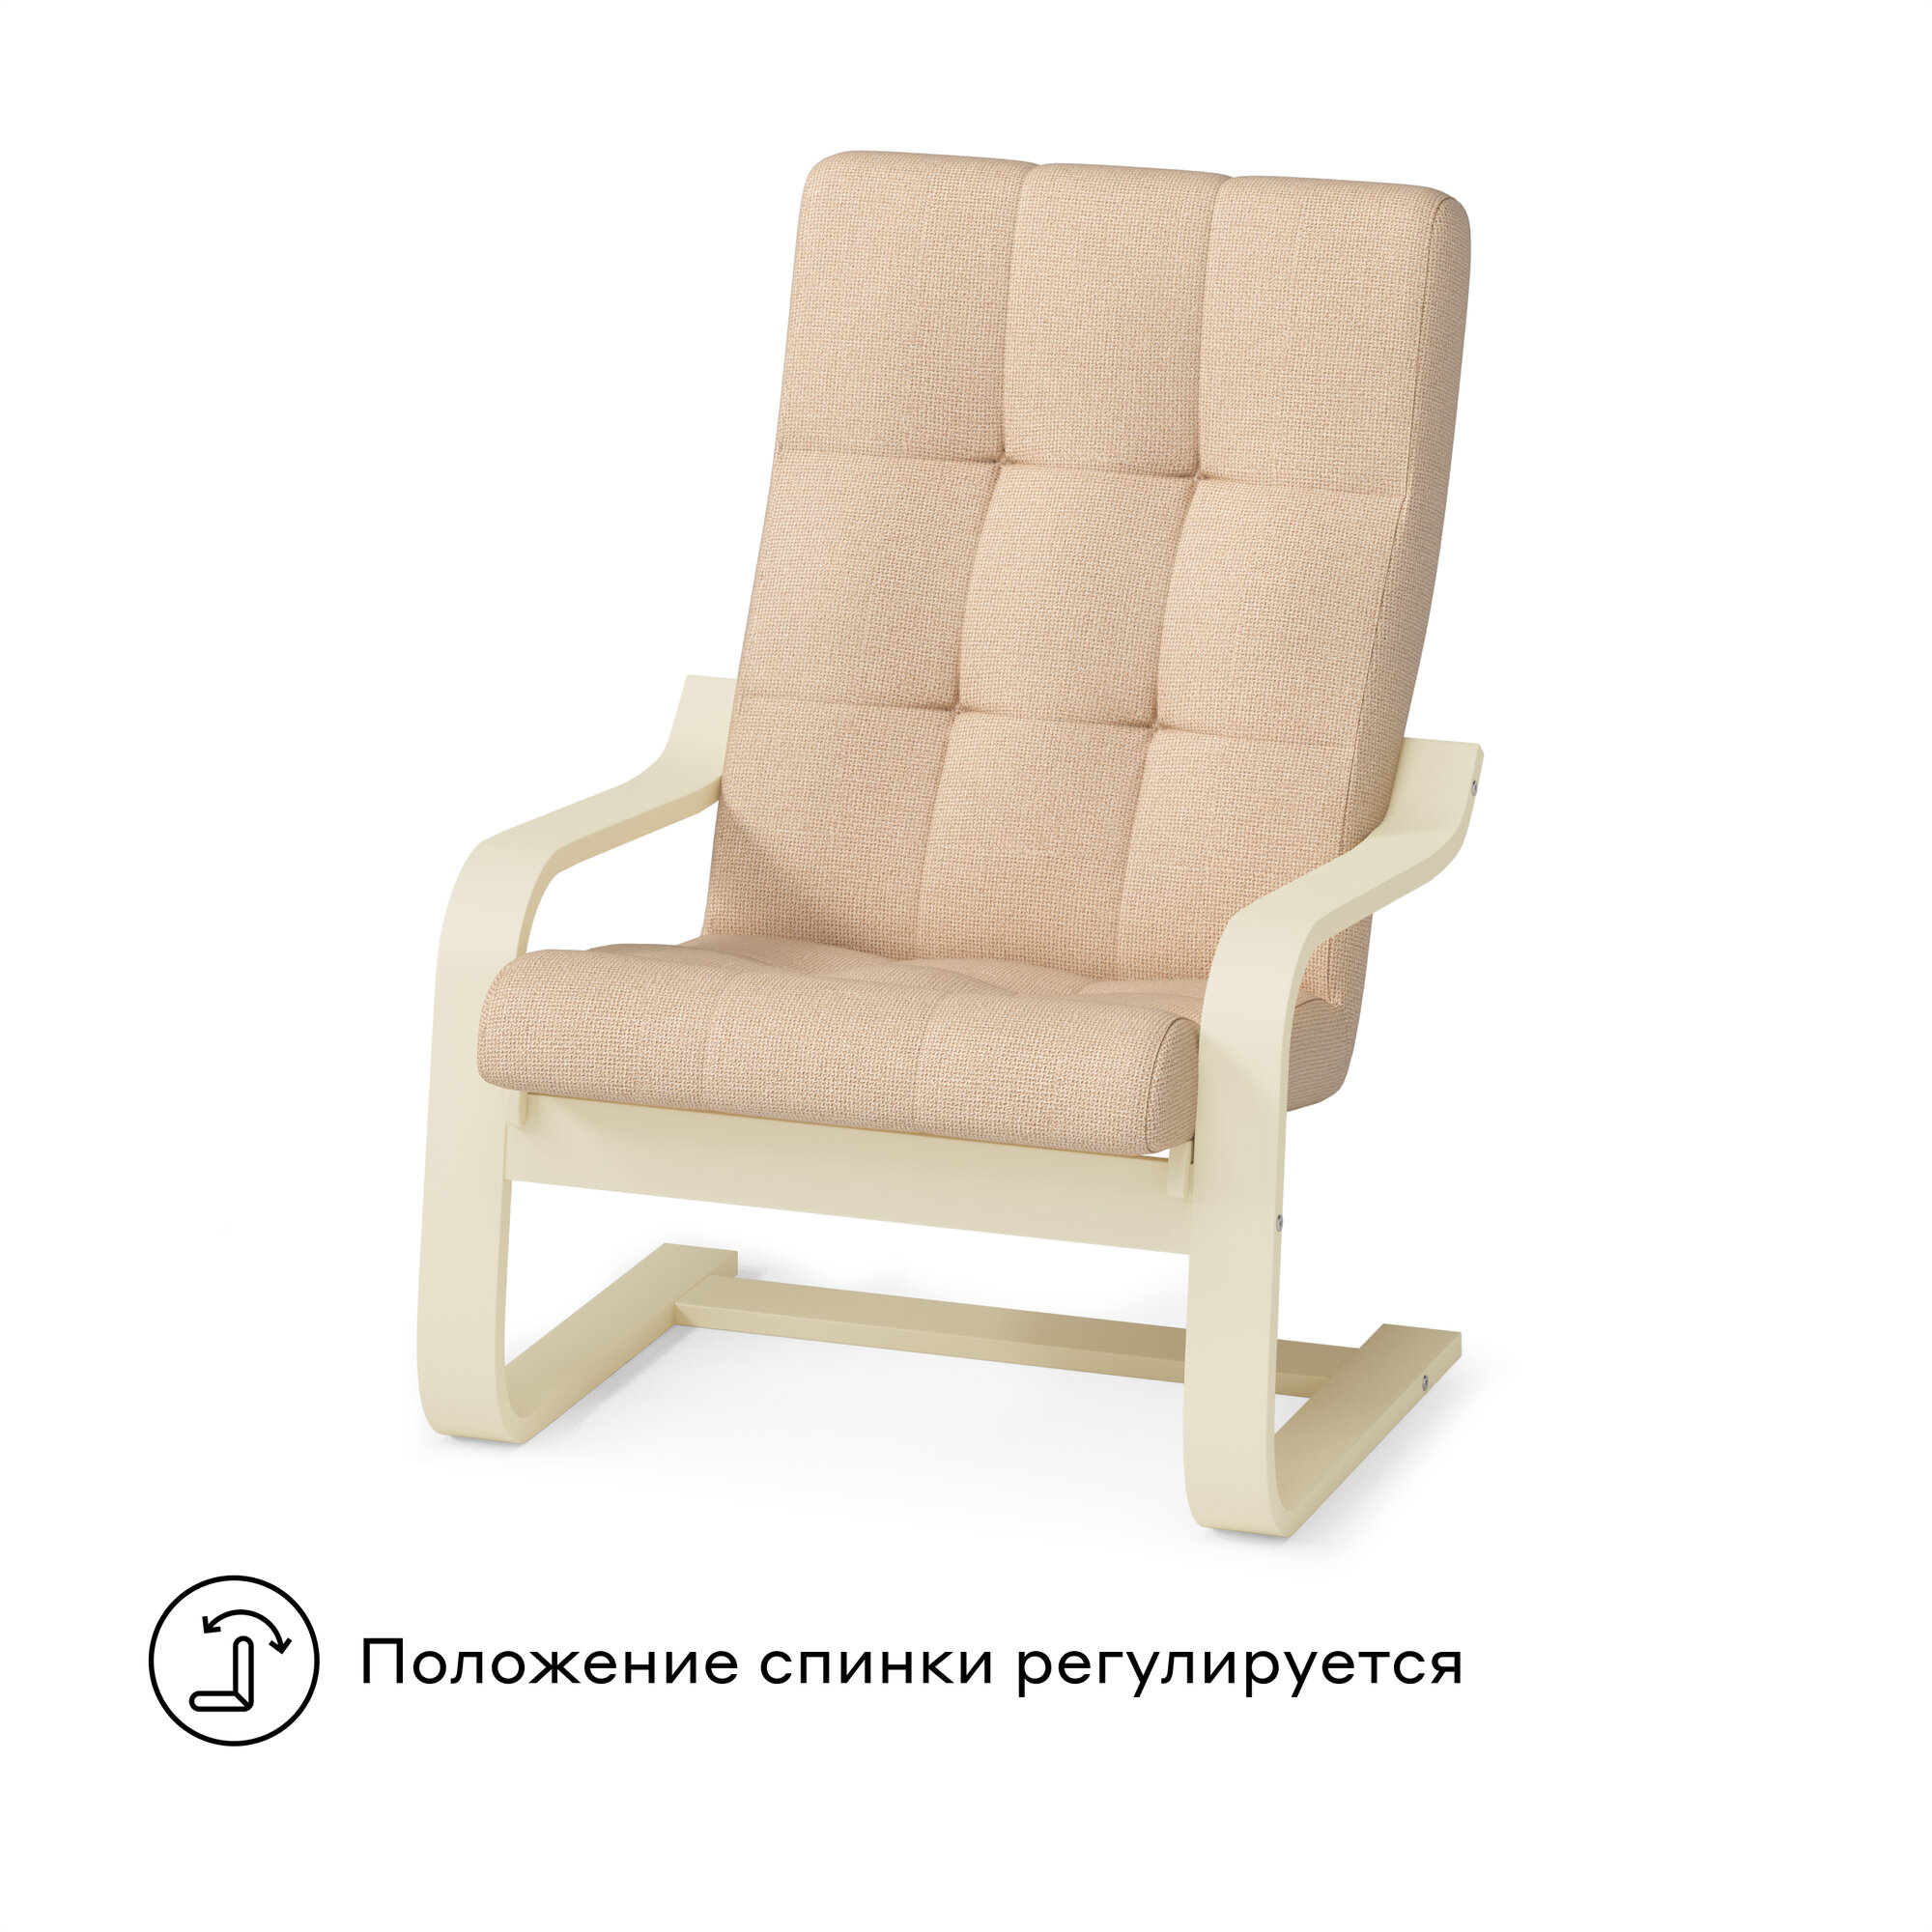 Кресло для отдыха Pragma Okhta с регулируемой спинкой, обивка: текстиль, бежевый/бежевый